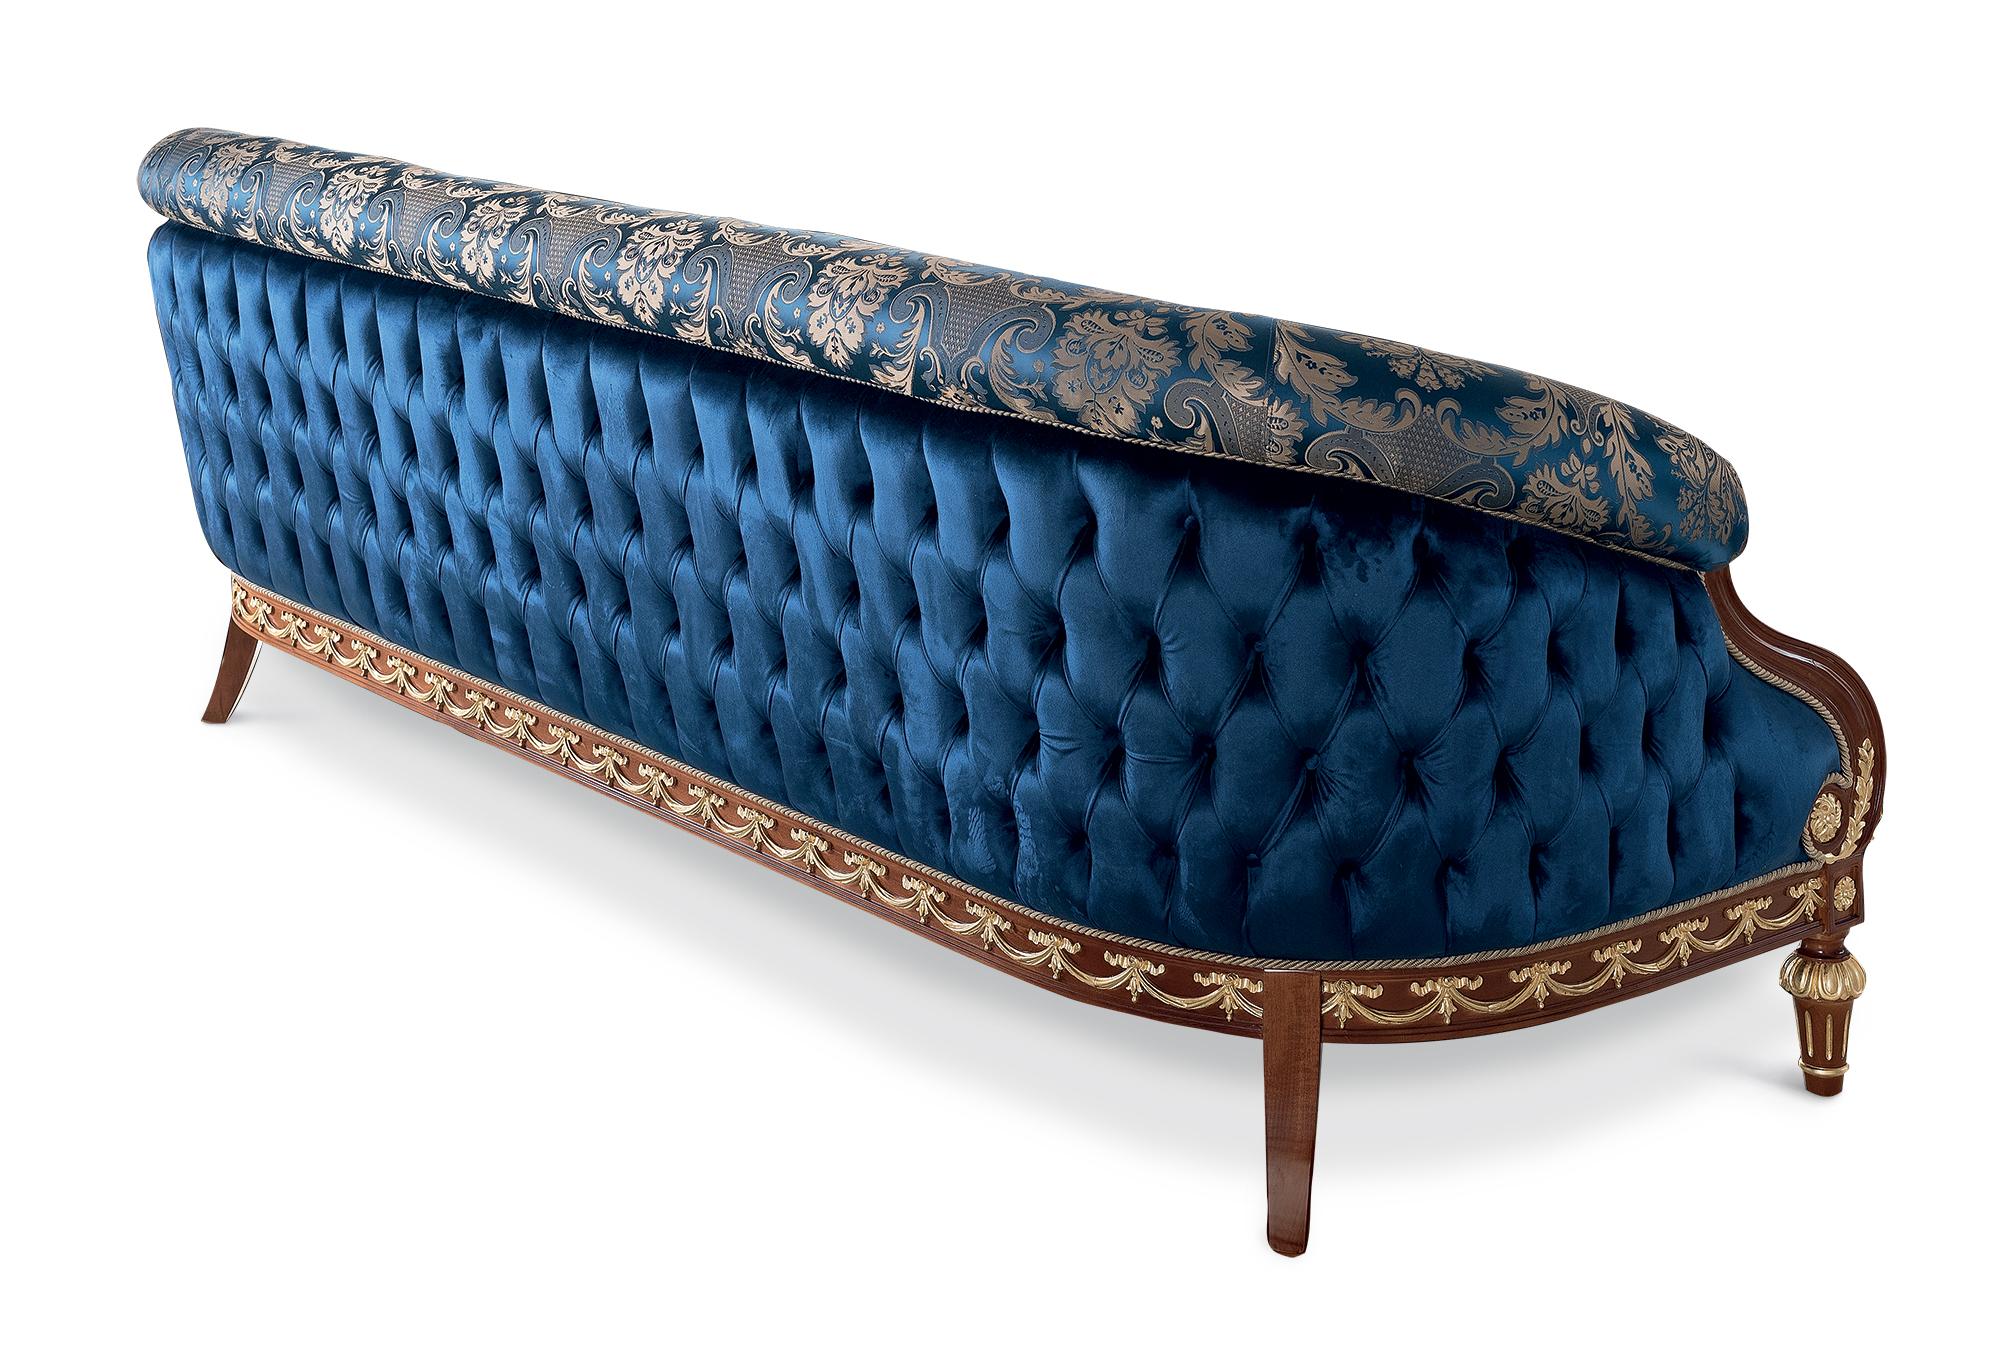 Le canapé trois places bleu noble, fabriqué sur mesure, met en valeur le travail artisanal classique le plus raffiné. Le siège incurvé accueille ses hôtes avec deux caractéristiques de conception uniques. Tout d'abord, la superbe façade en damas